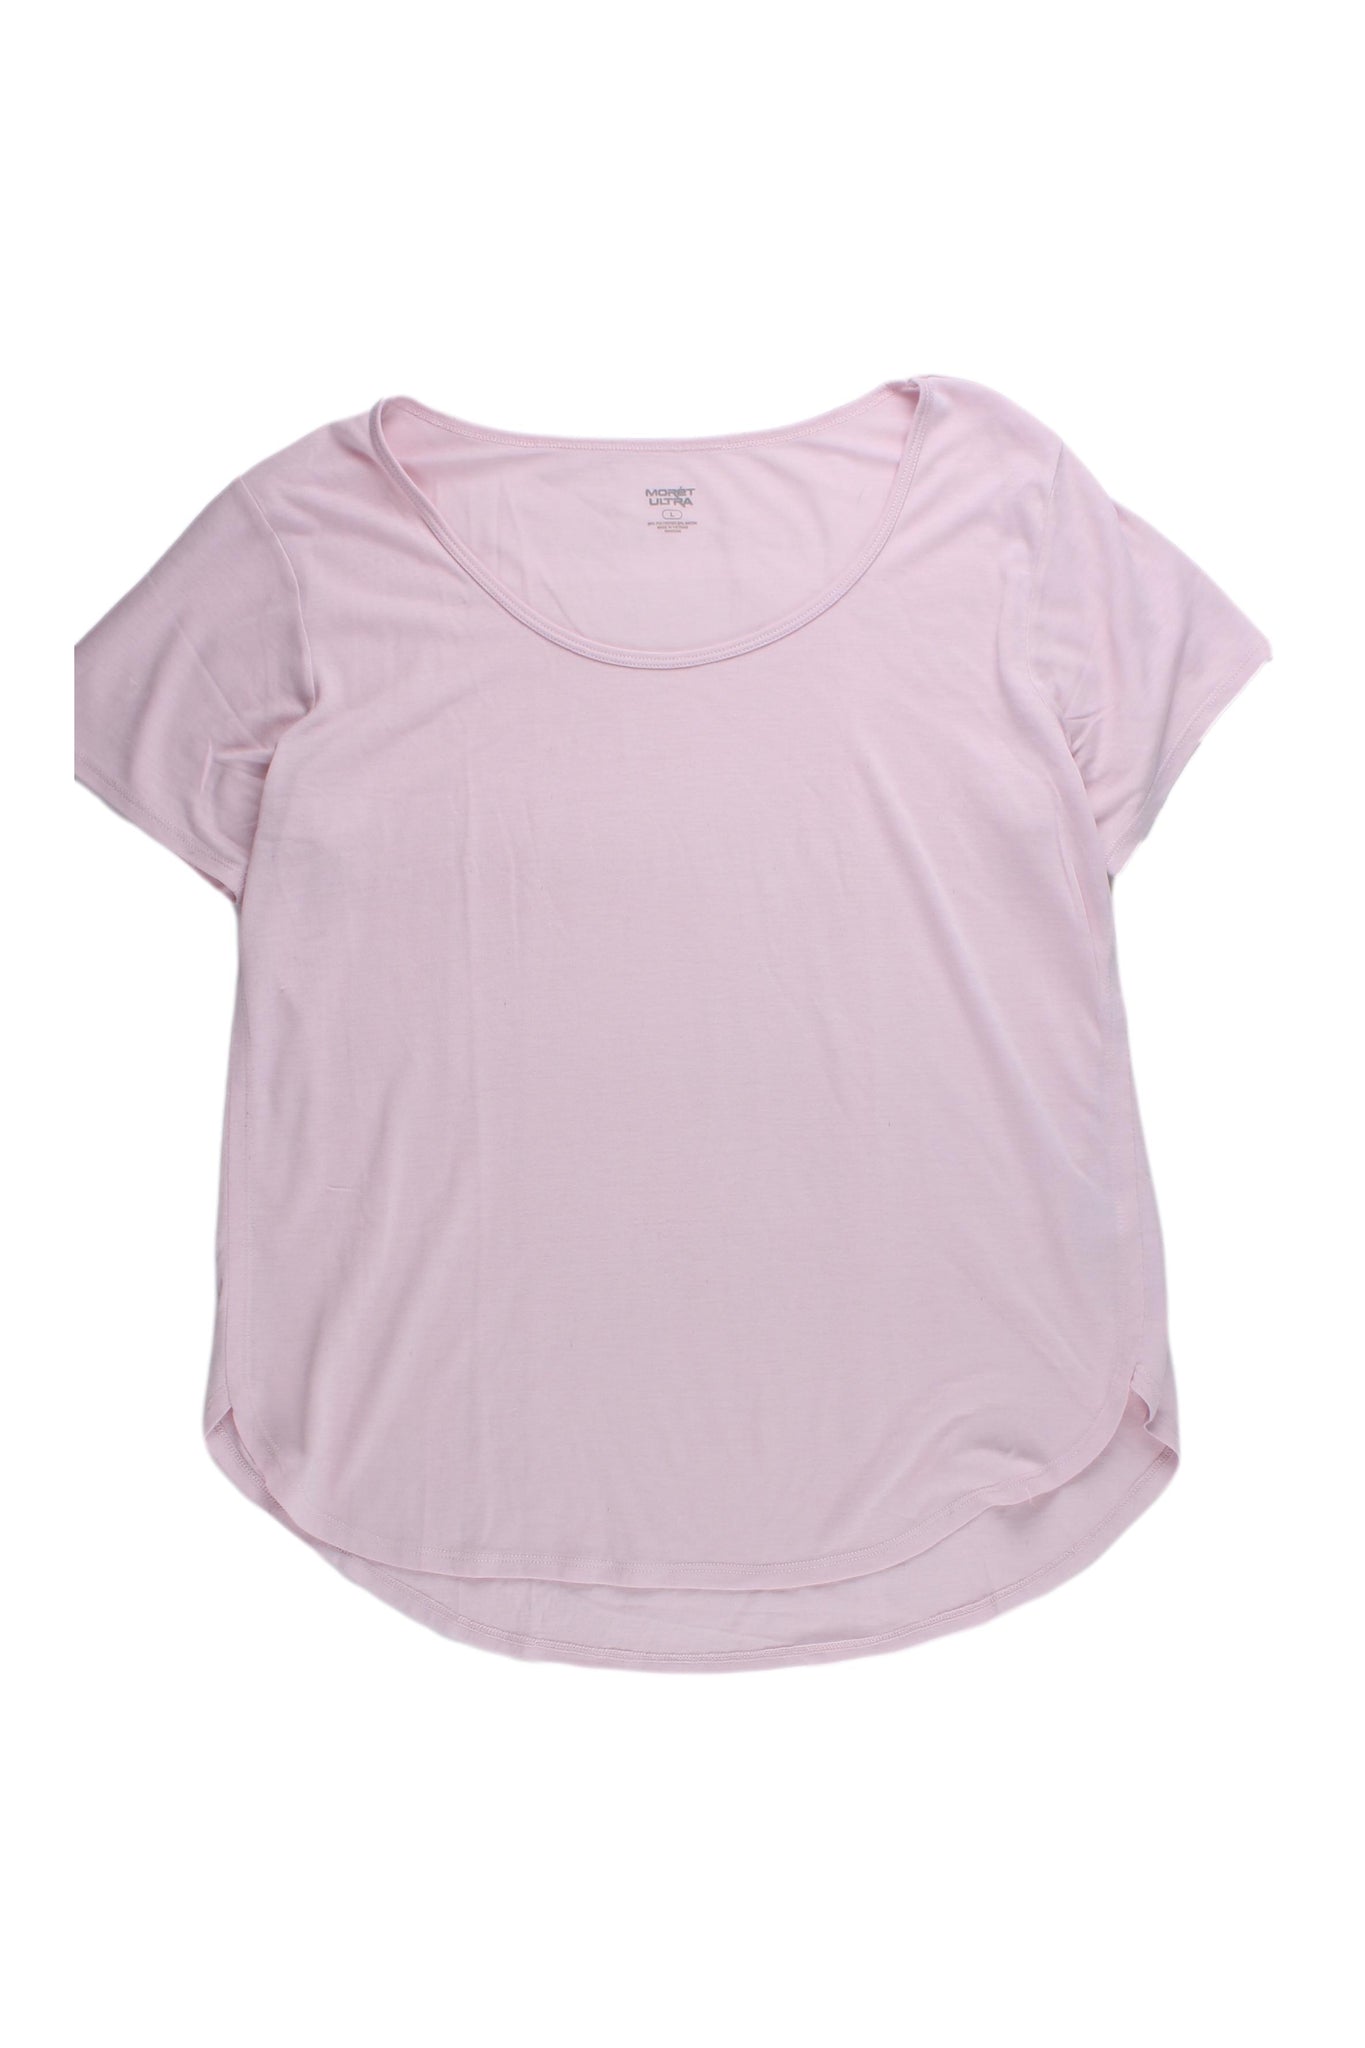 MORET ULTRA - Camiseta Color Rosa Claro